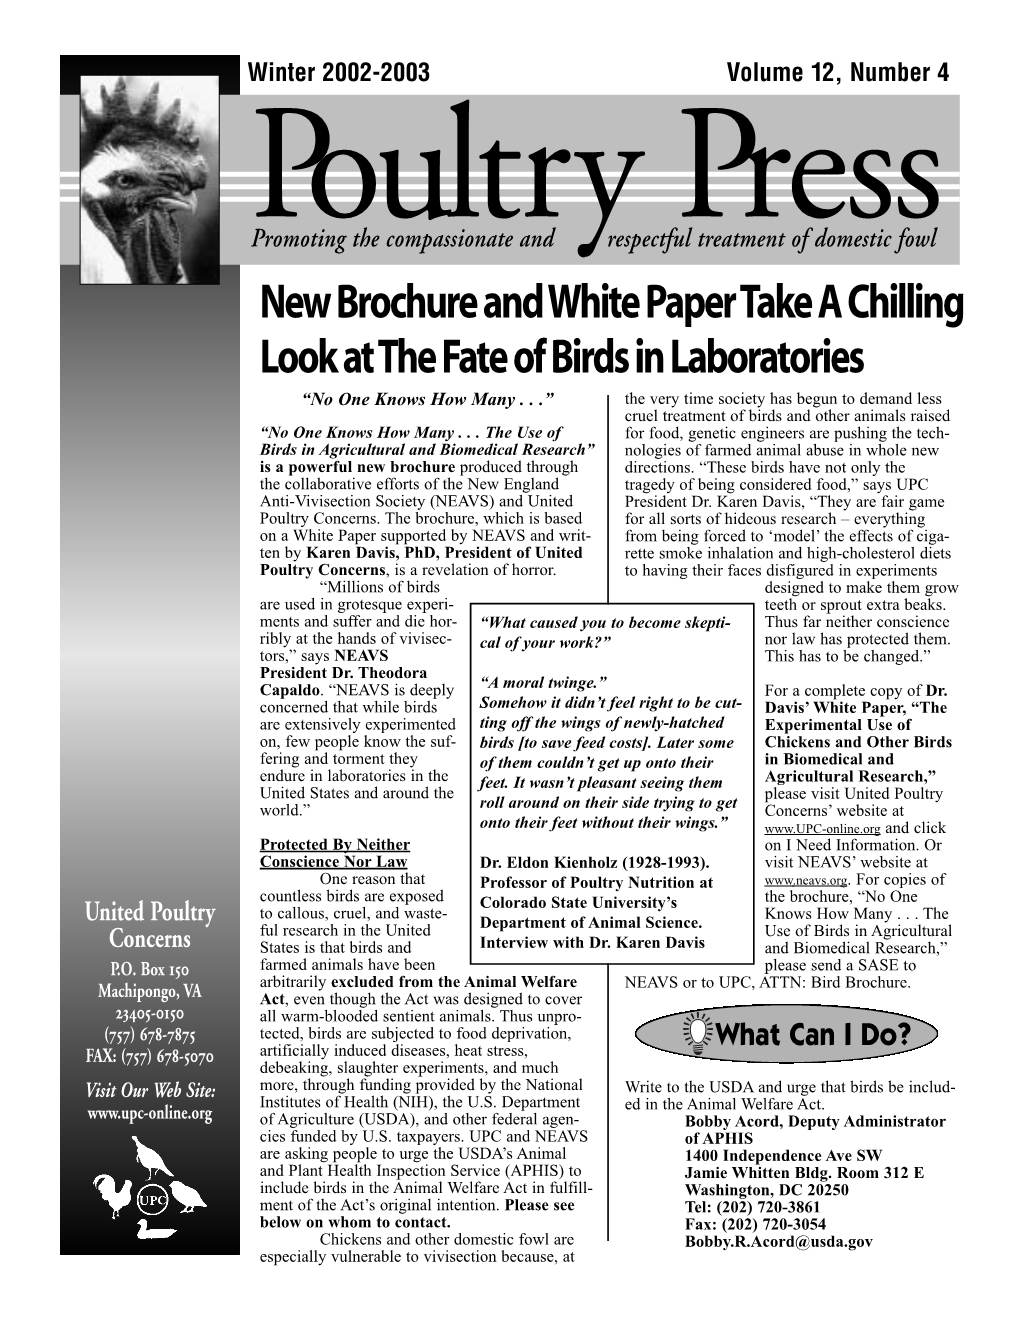 UPC Winter 2002-2003 Poultry Press